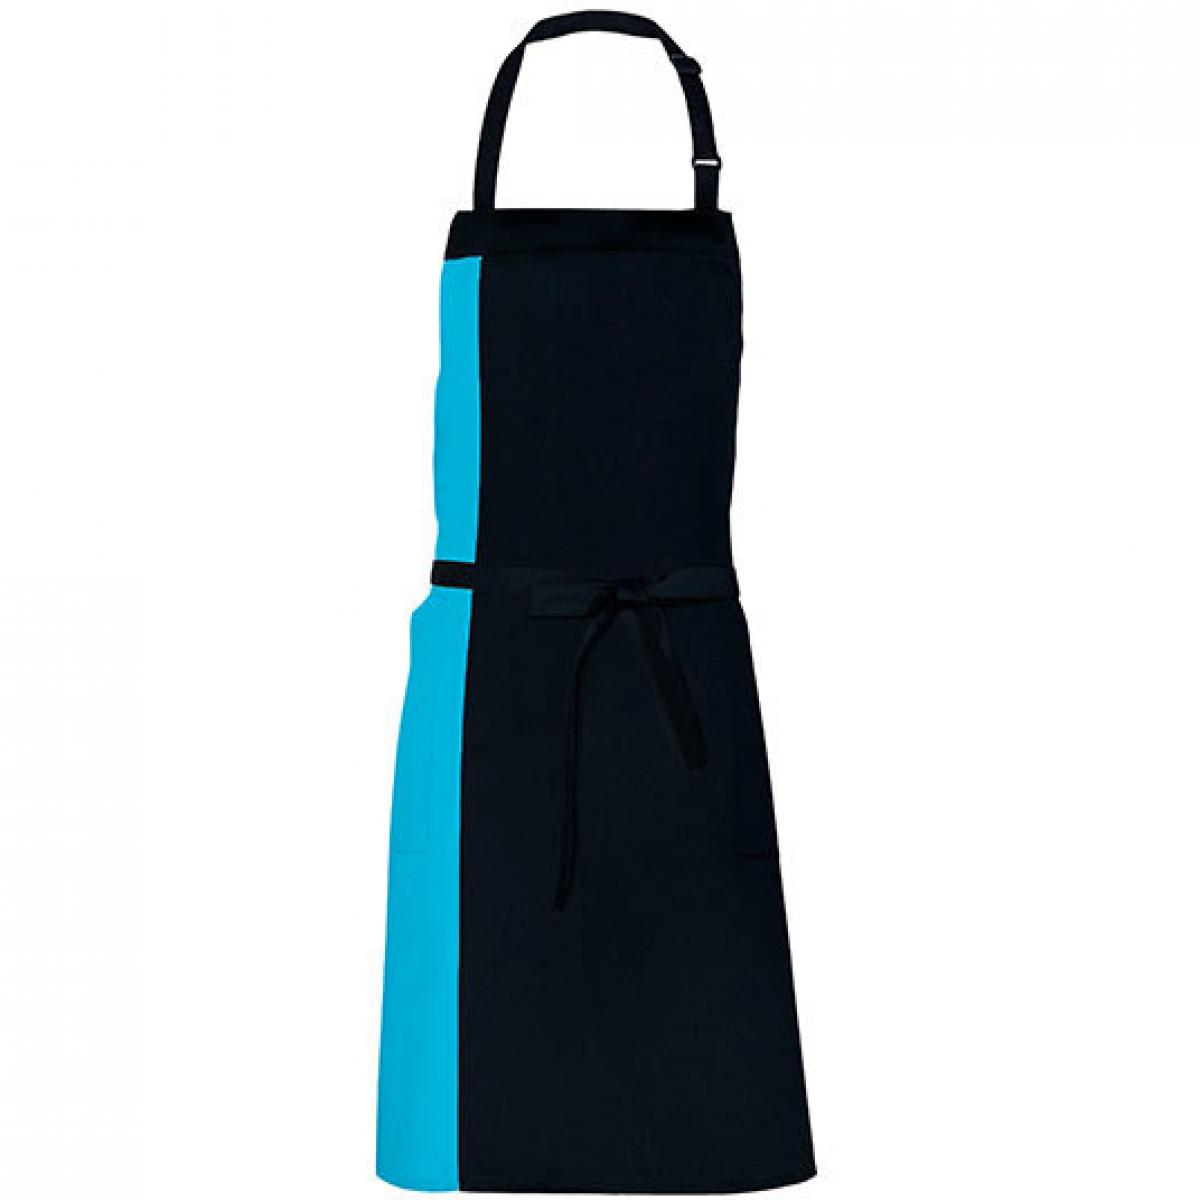 Hersteller: Link Kitchen Wear Herstellernummer: DS8572 Artikelbezeichnung: Duo Apron - 72 x 85 cm - Waschbar bis 60 °C Farbe: Black/Turquoise (ca. Pantone 312)